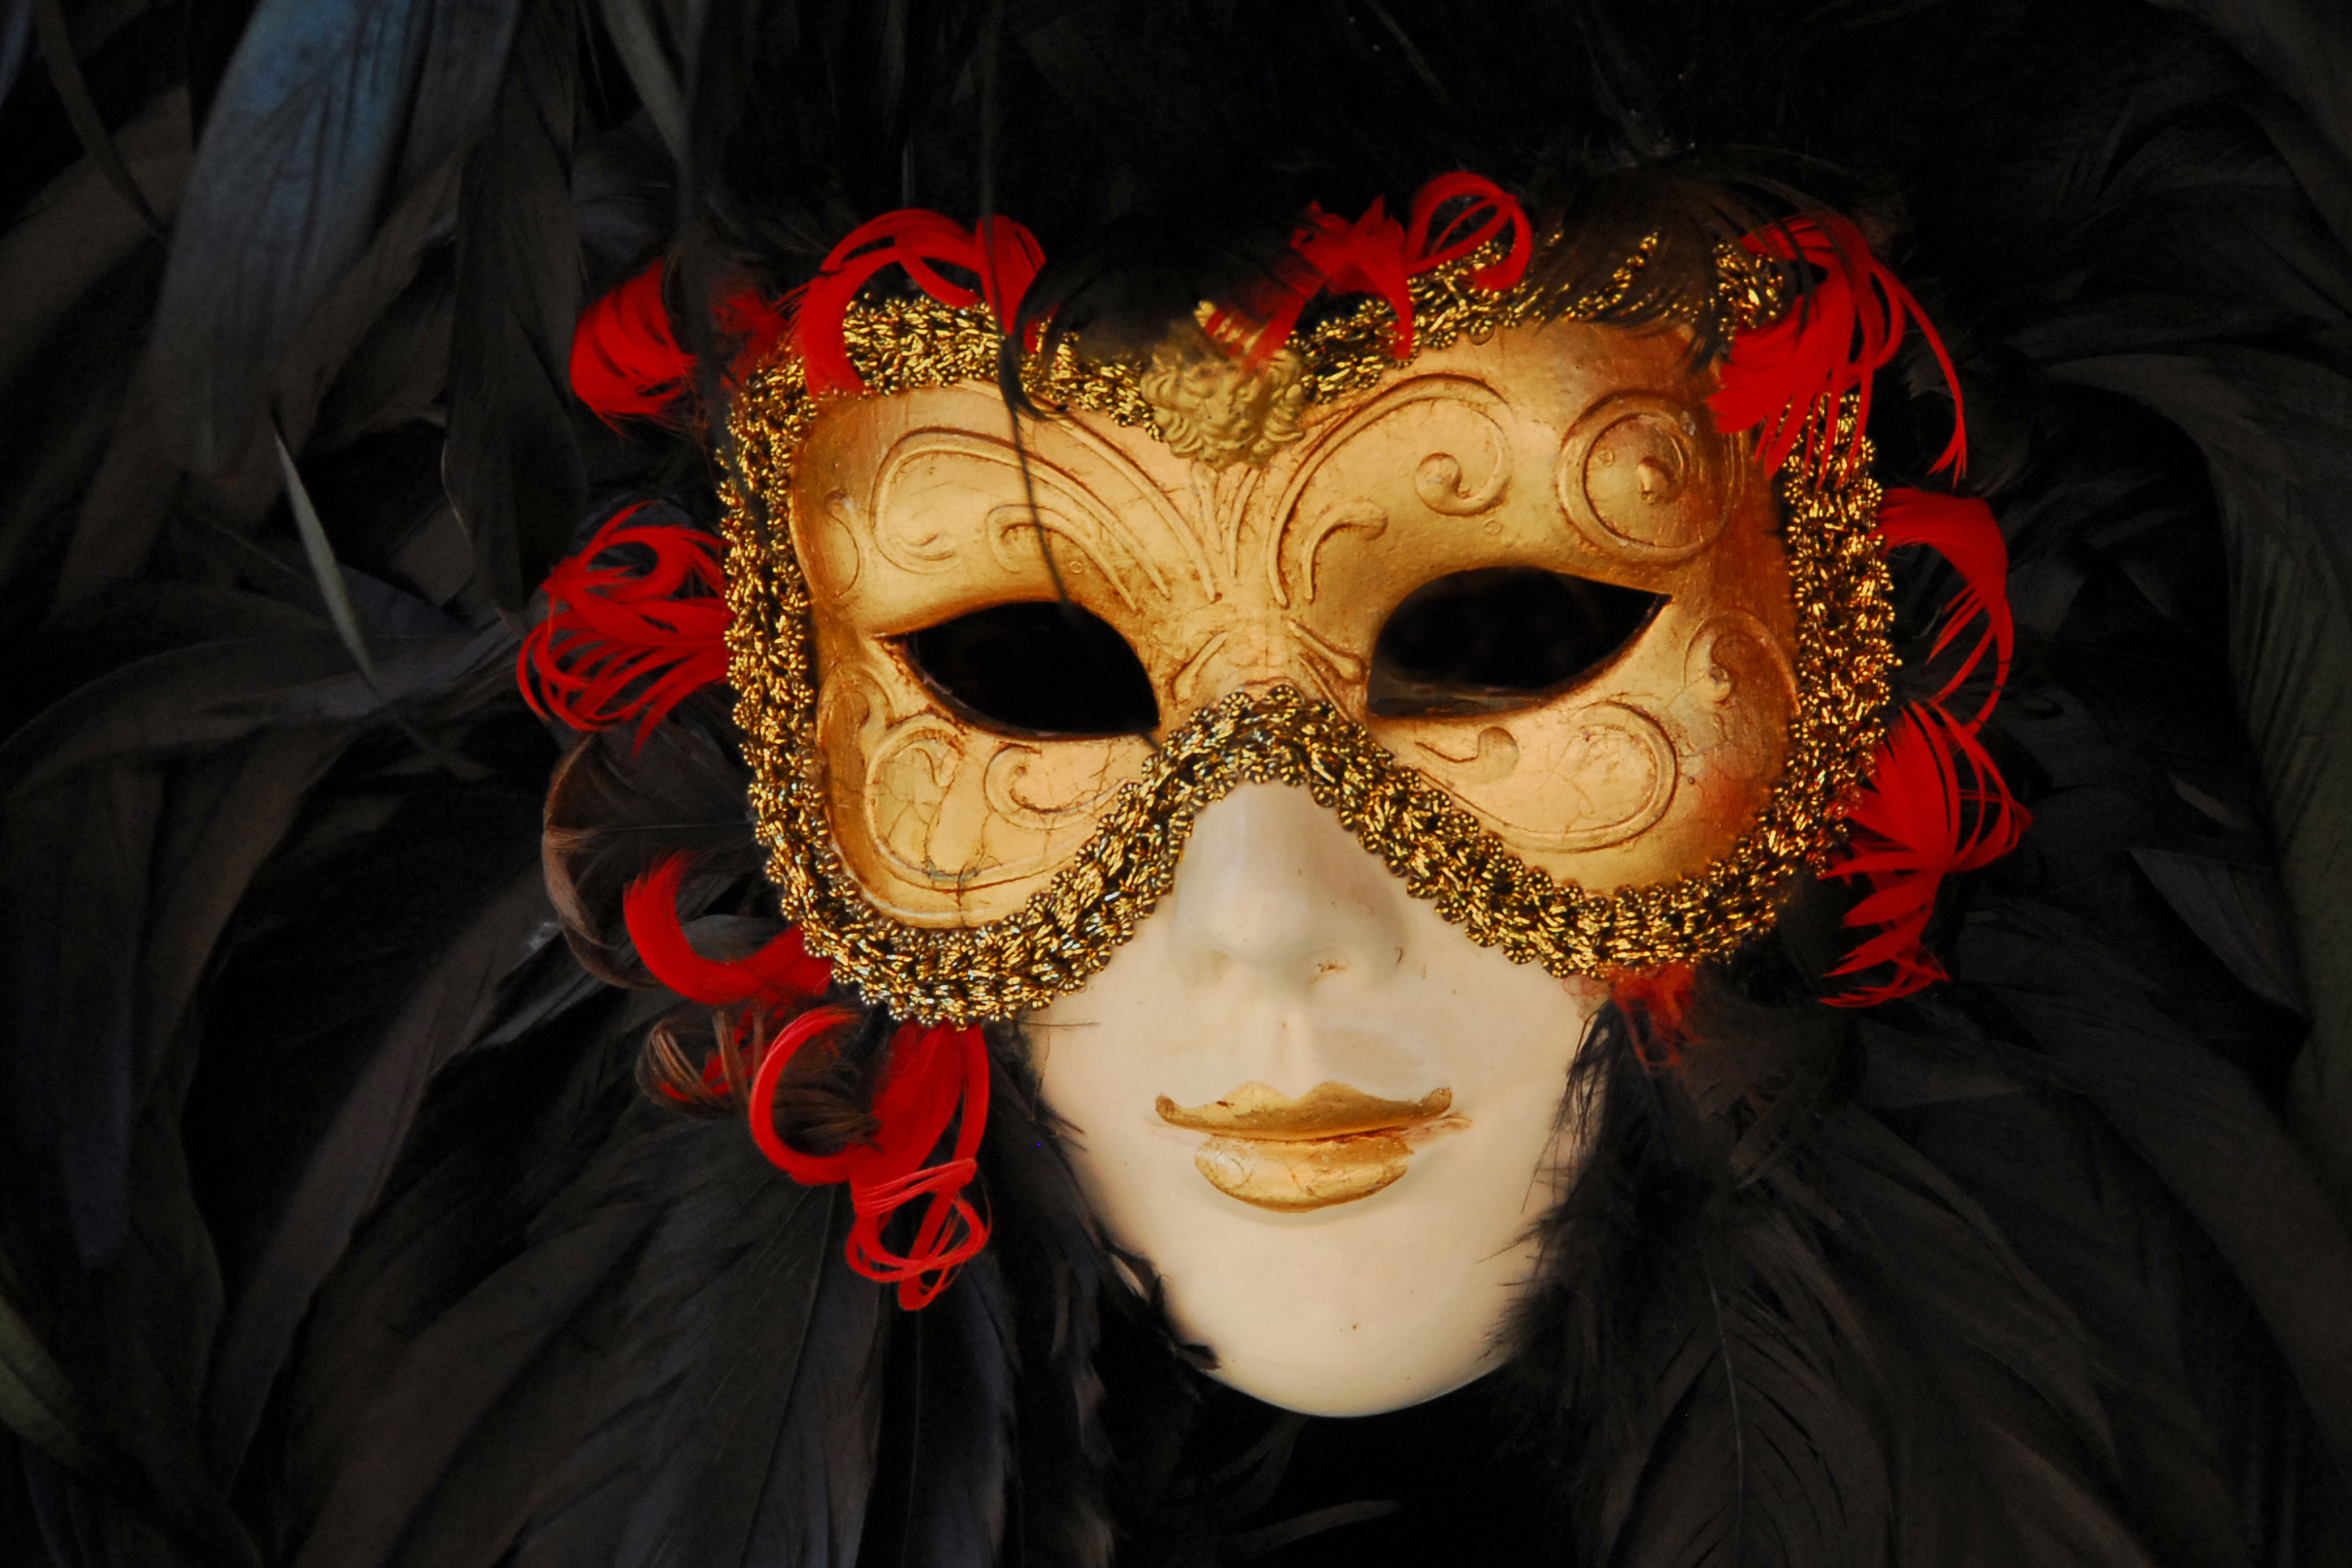 Самая красивая маска. Венецианский карнавал Коломбина. Венецианская маска Маттачино. Карнавальная маска Венеция 18-19вв. Маска Венеция для карнавала.